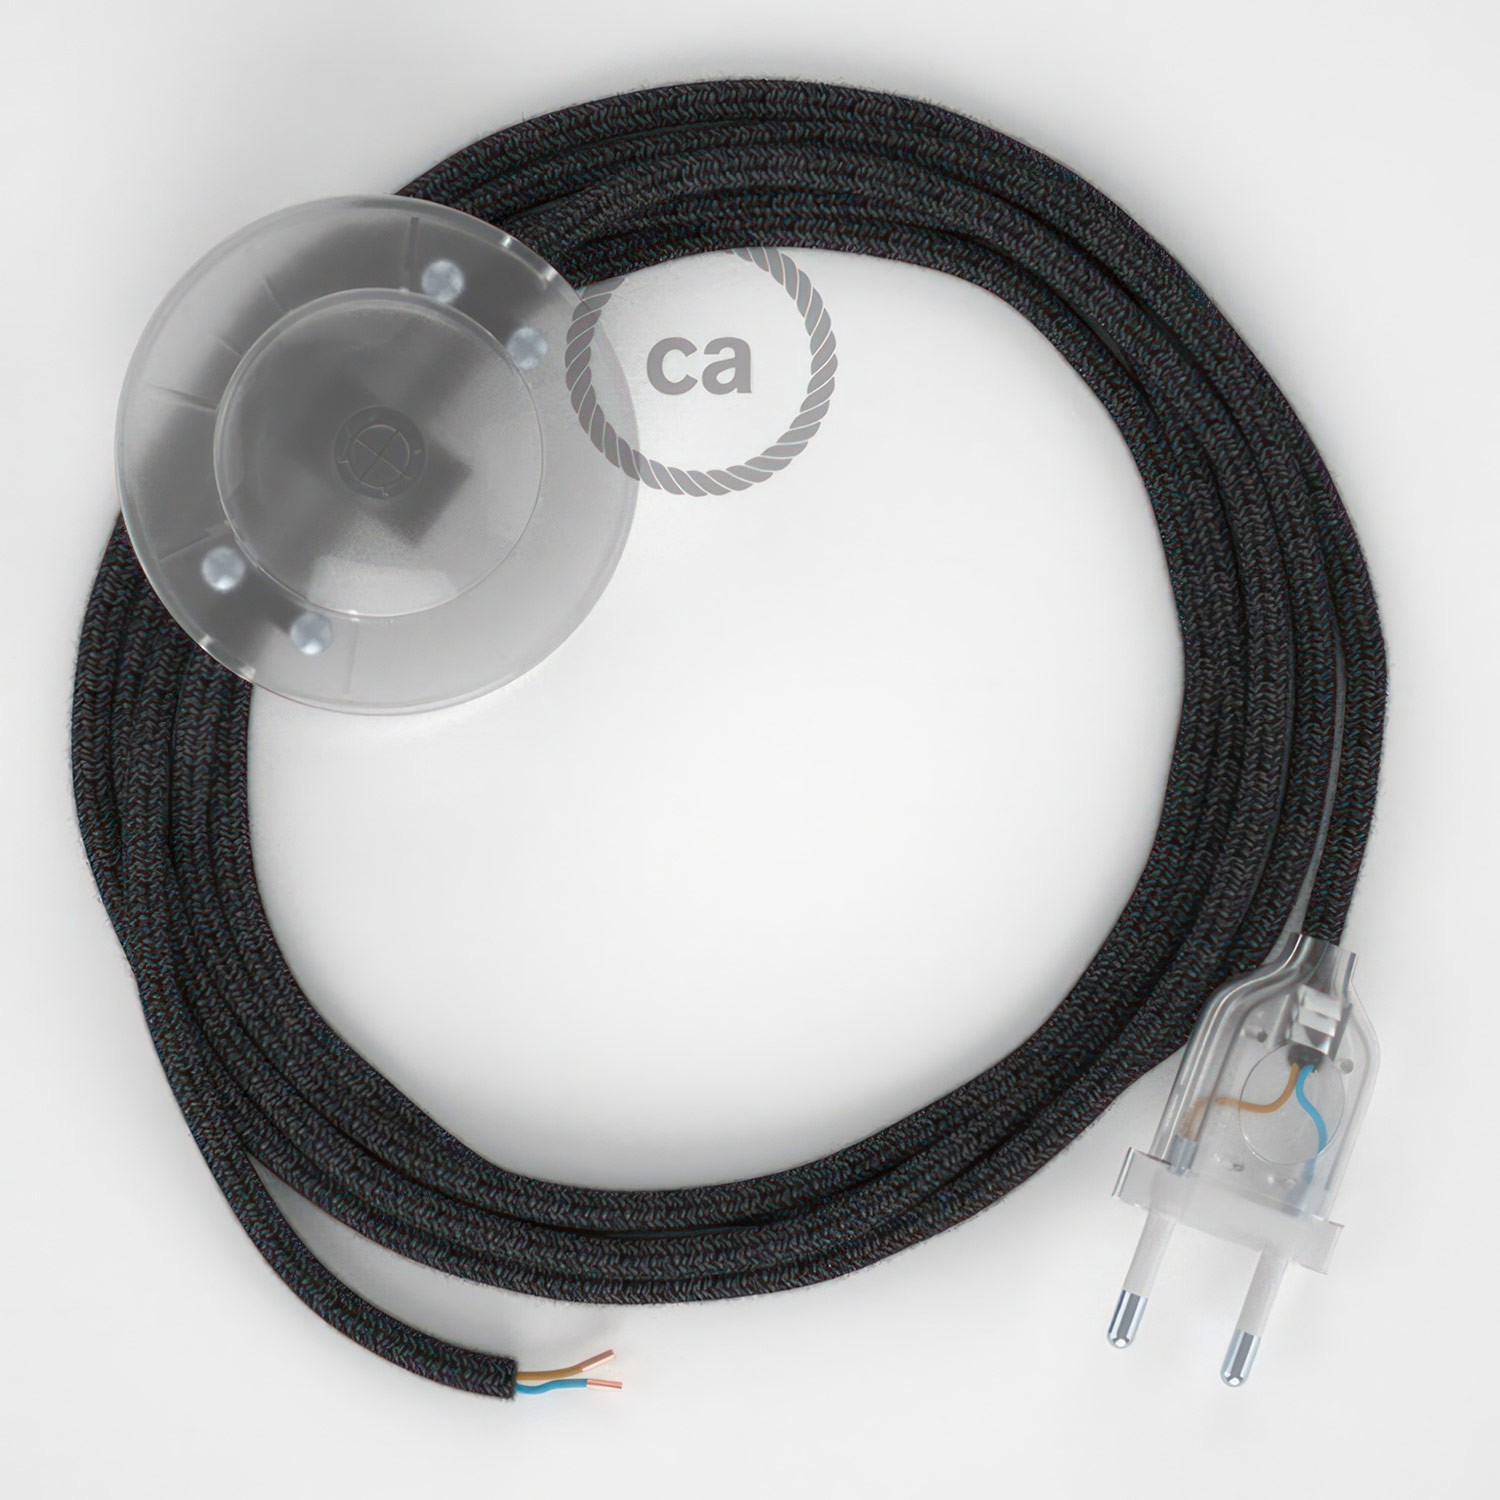 Cableado para lámpara de pie, cable RN03 Lino Natural Antracita 3 m. Elige tu el color de la clavija y del interruptor!